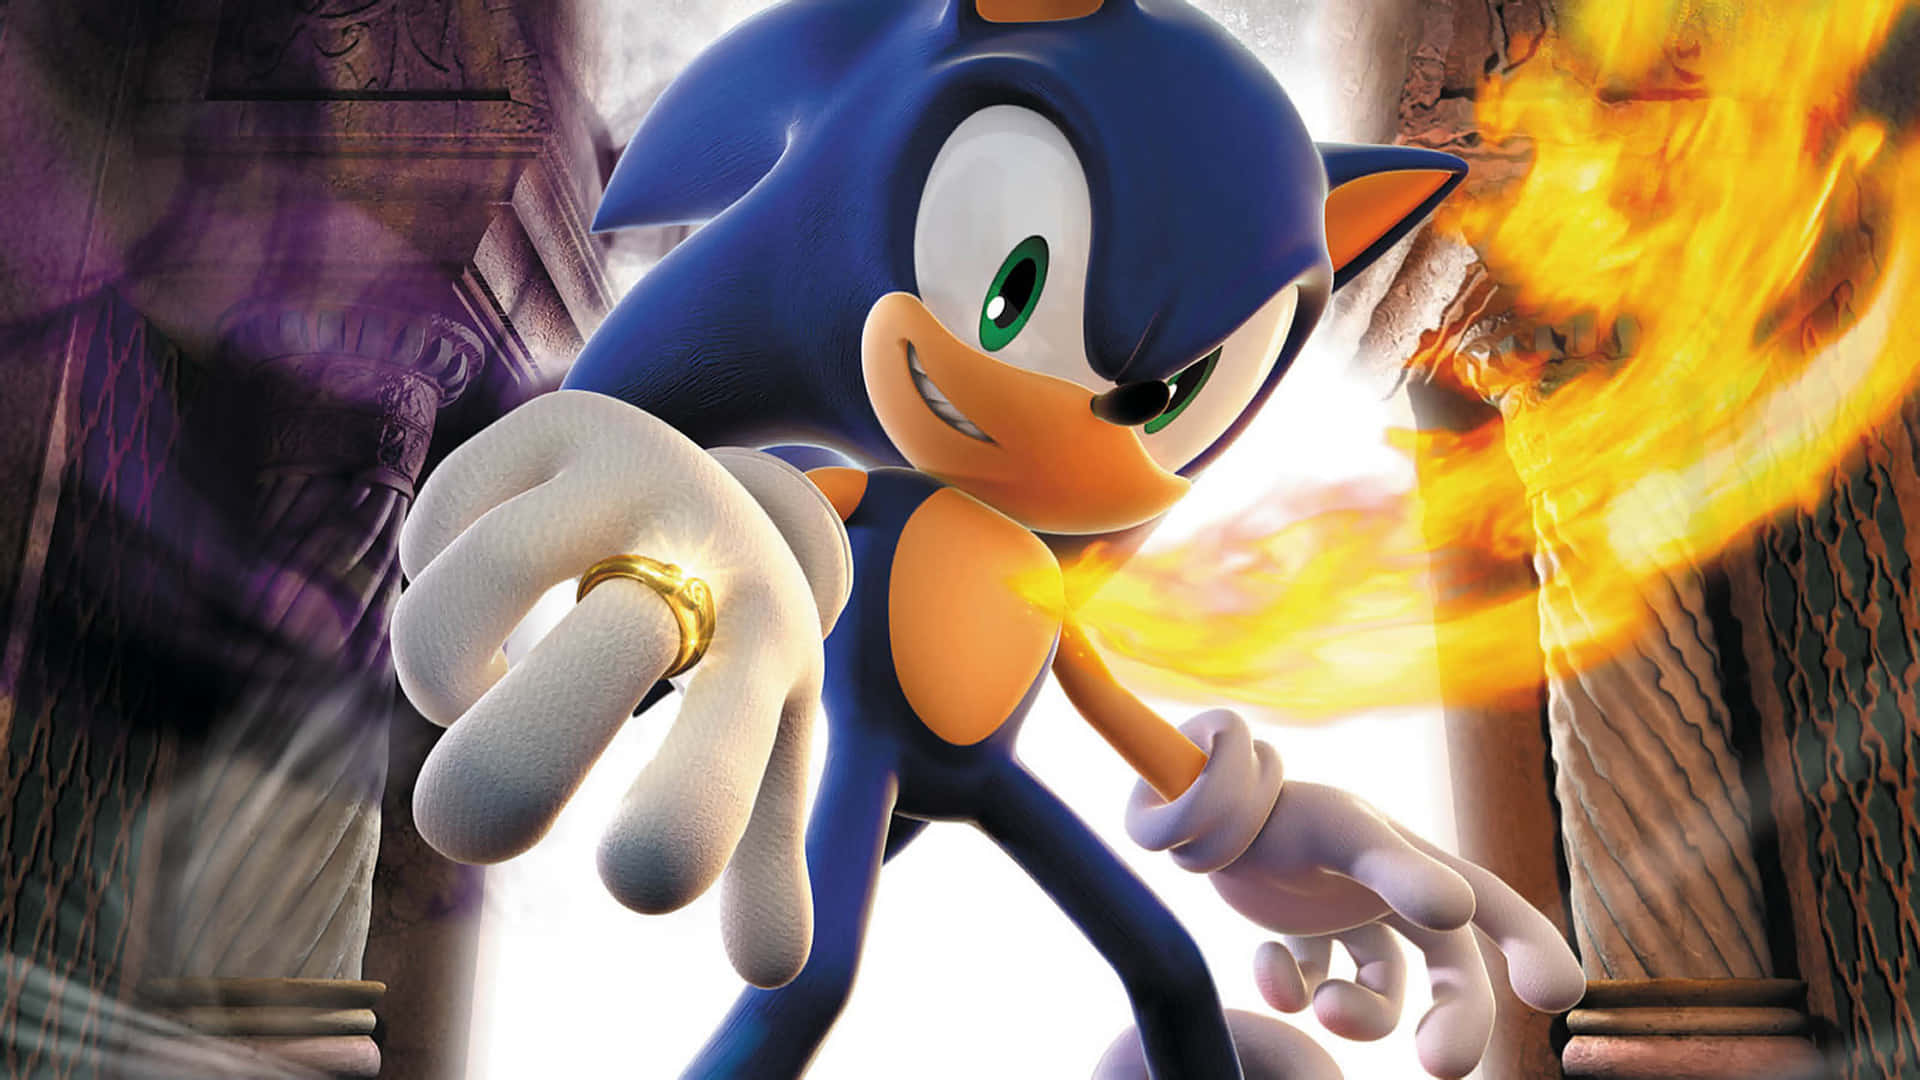 Sonicse Desplaza A Velocidades Supersónicas A Través De Un Mundo Mágico En Sonic Y Los Anillos Secretos. Fondo de pantalla